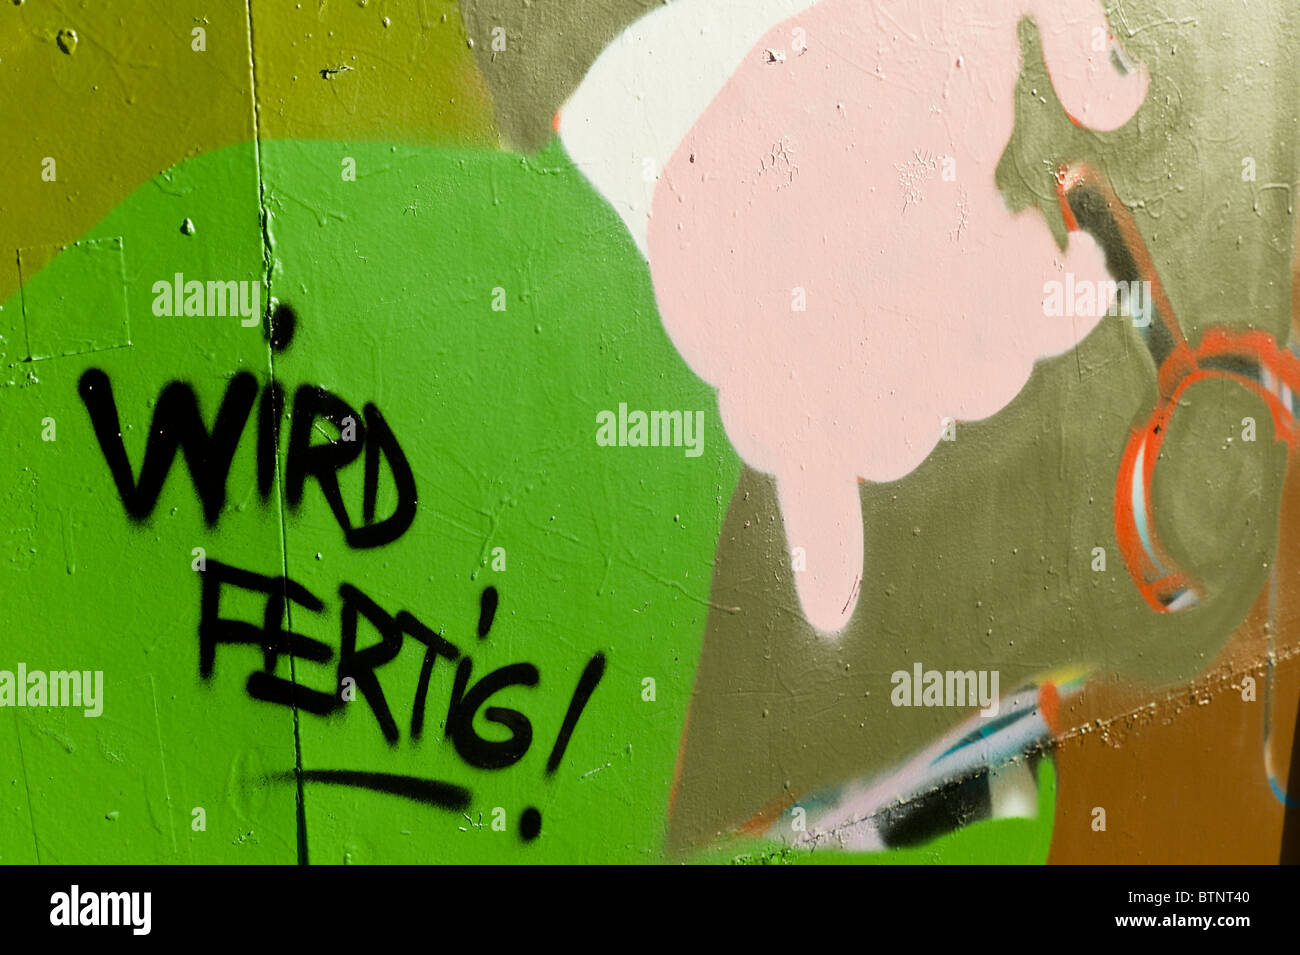 Graffiti mit einem hellgrünen Hintergrund und dem deutschen Worte "Wird Fertig!" / "fertig!". München, Deutschland Stockfoto